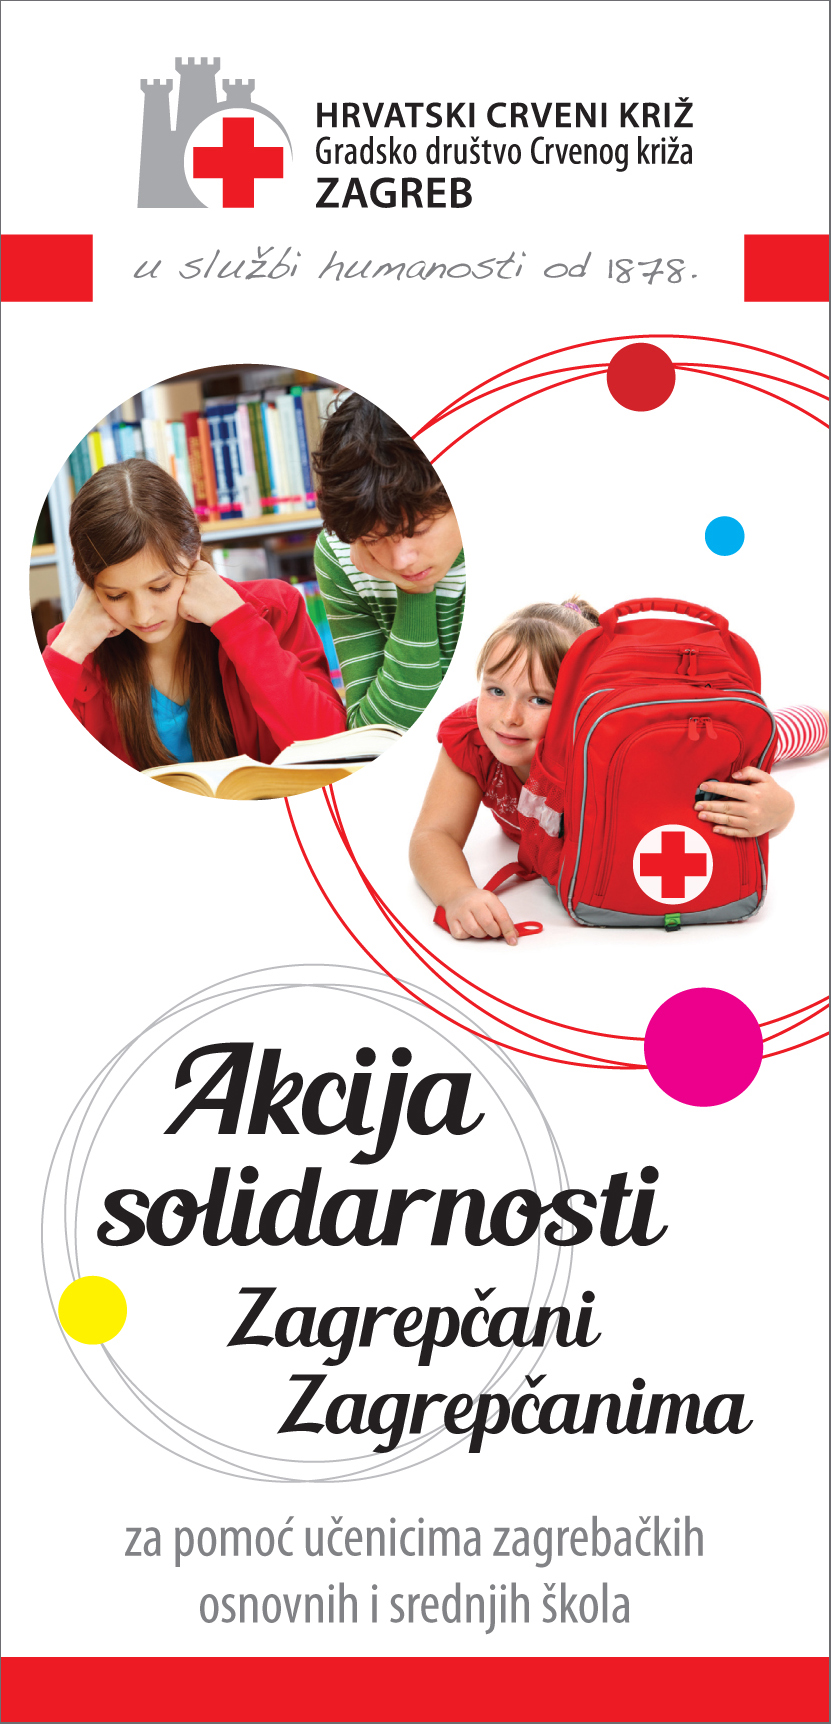 Croatian Red Cross - humanitarian action 2014